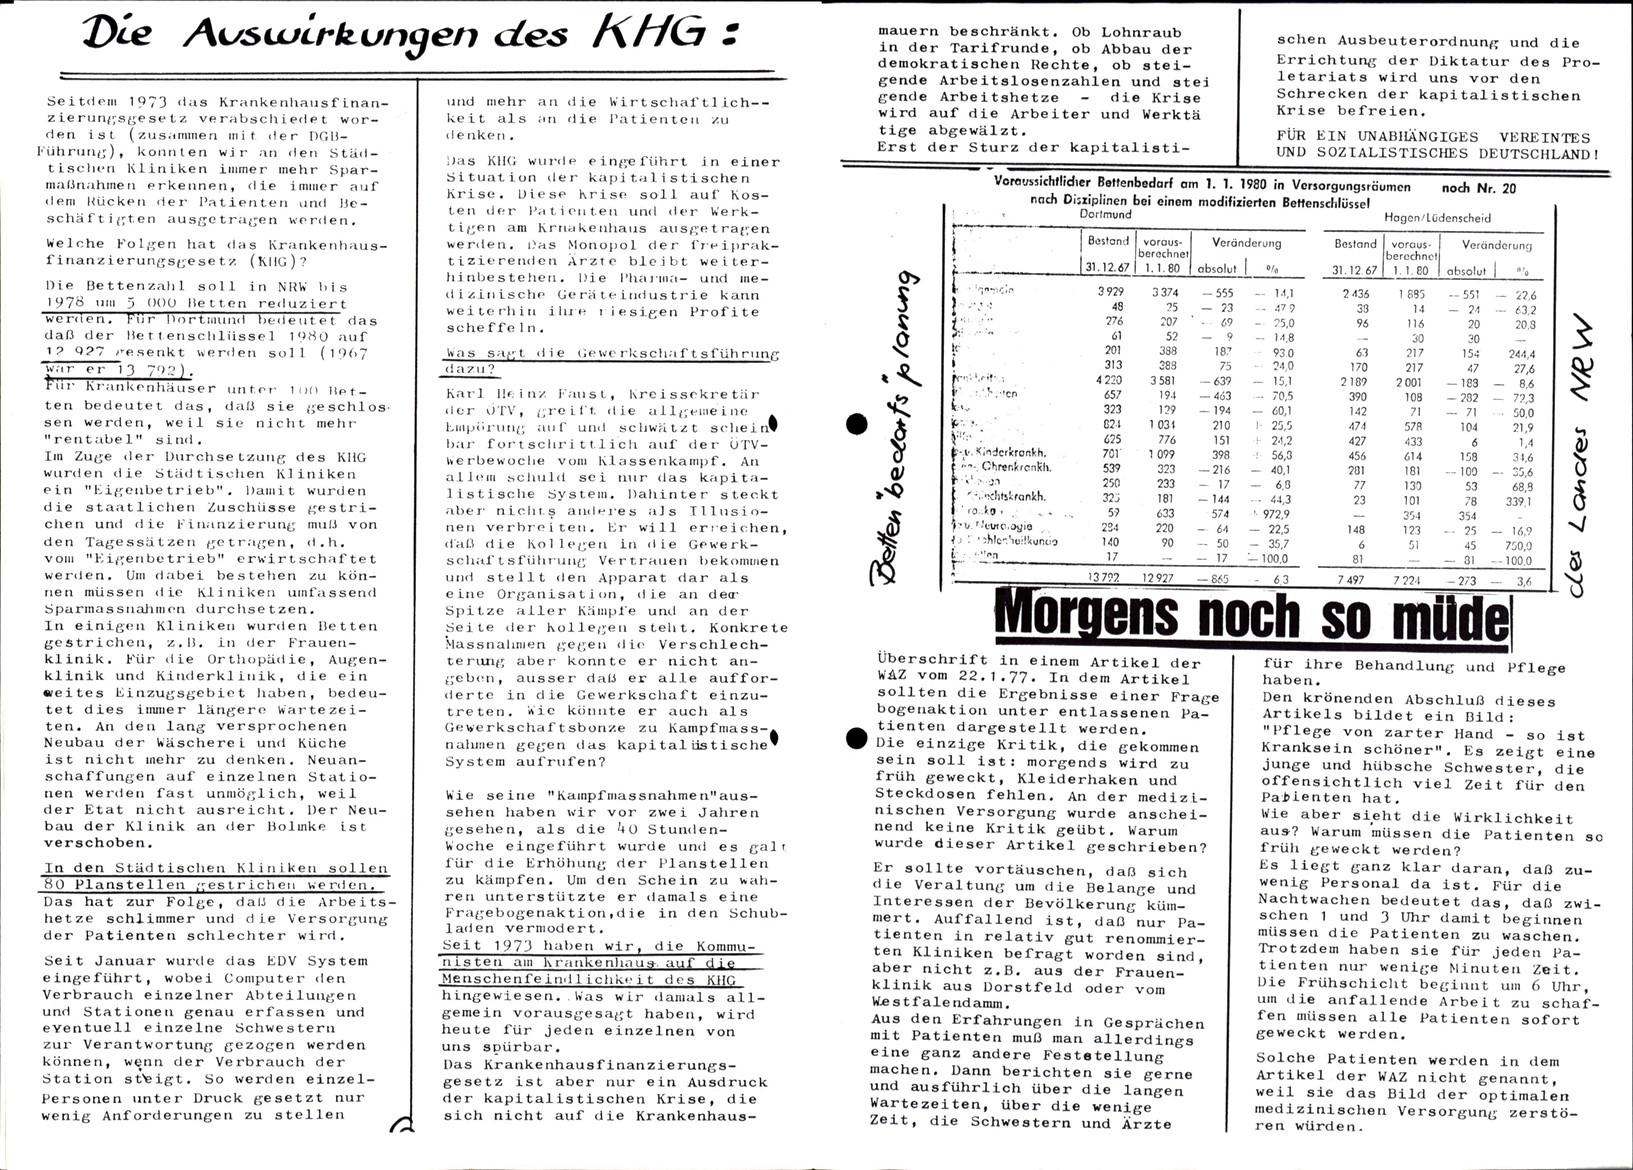 Dortmund_AO_Kommunistische_Presse_Krankenhaus_19770100_04